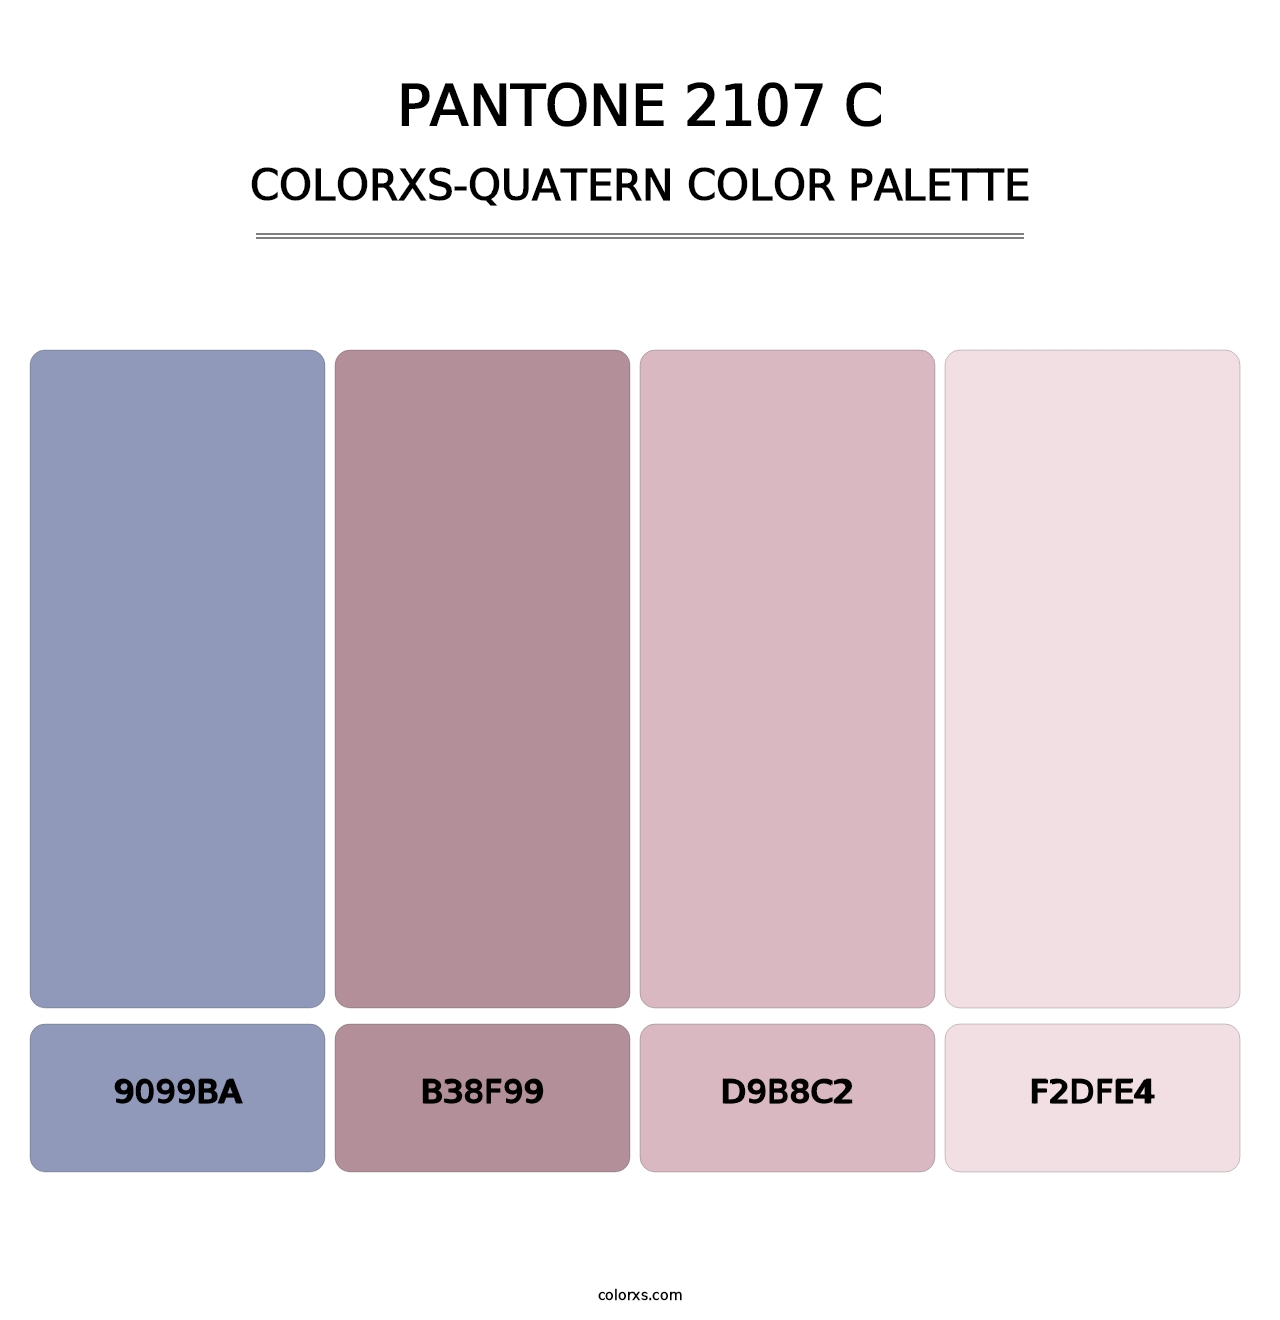 PANTONE 2107 C - Colorxs Quatern Palette